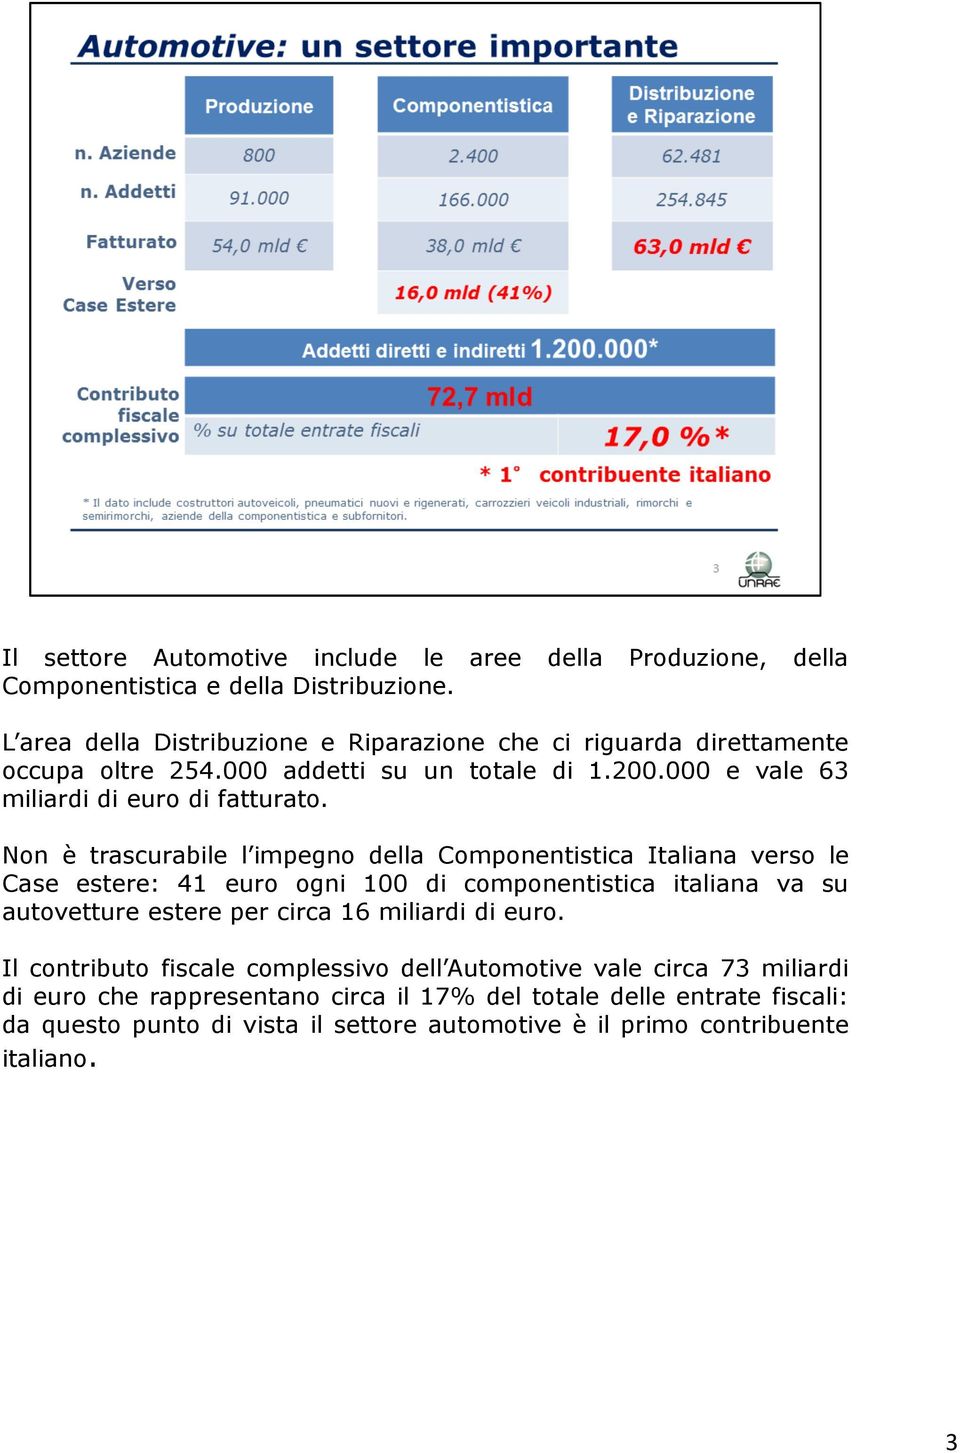 Non è trascurabile l impegno della Componentistica Italiana verso le Case estere: 41 euro ogni 100 di componentistica italiana va su autovetture estere per circa 16